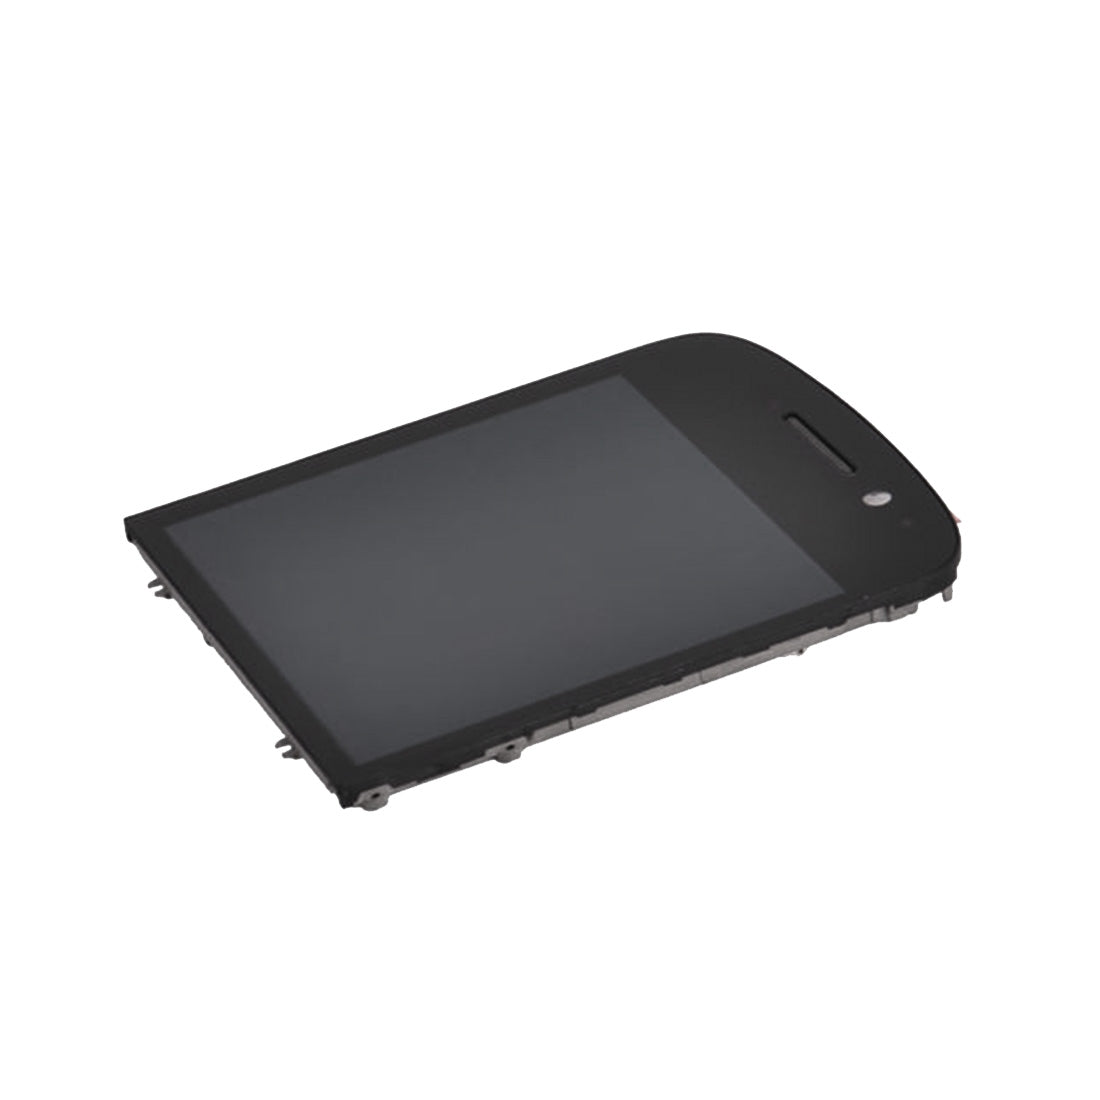 Full Screen LCD + Touch + Frame BlackBerry Q10 Black